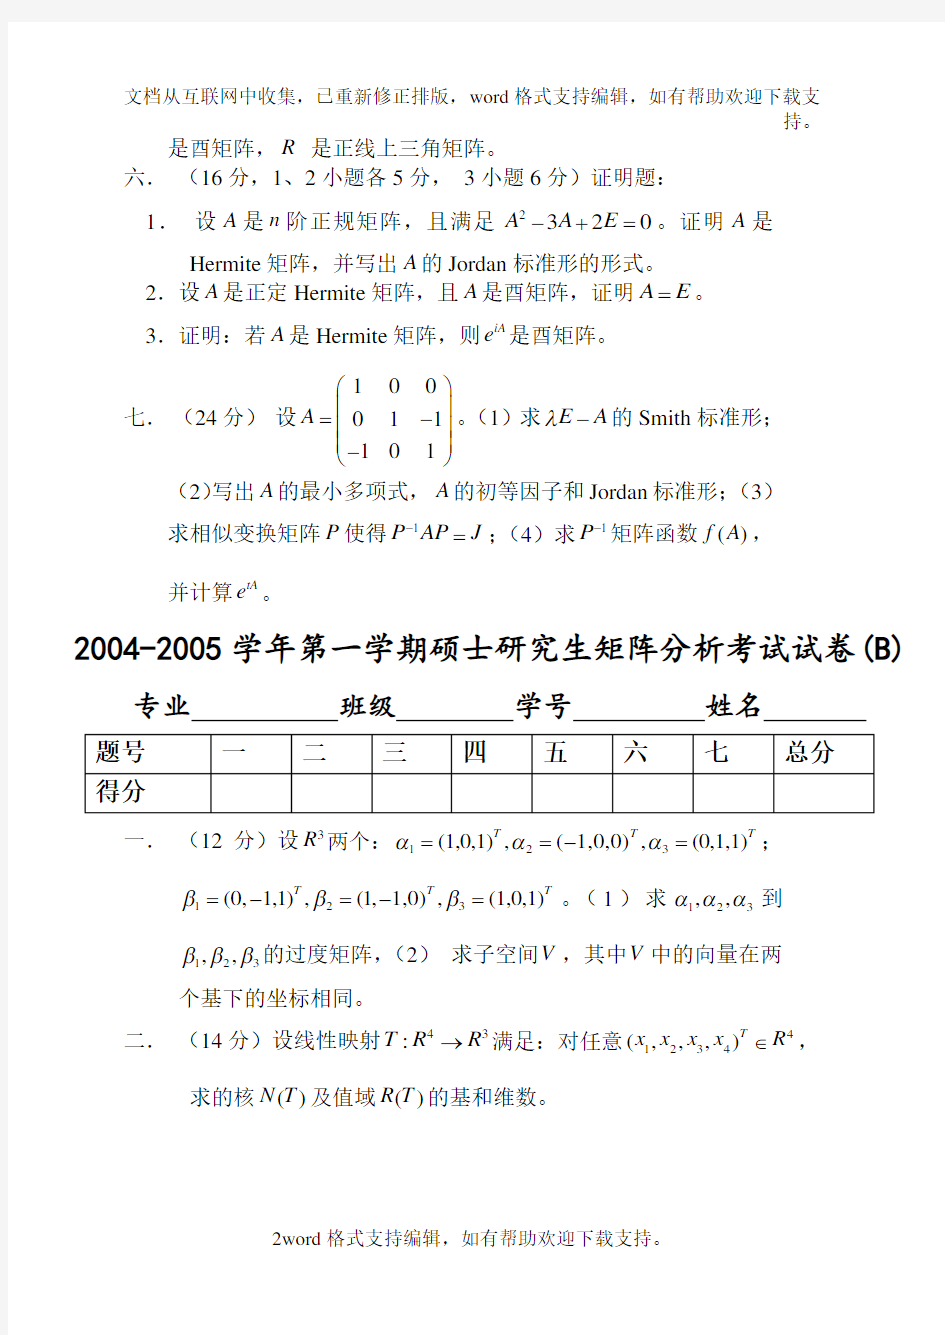 北京交通大学研究生矩阵分析期末考试试卷(7份)